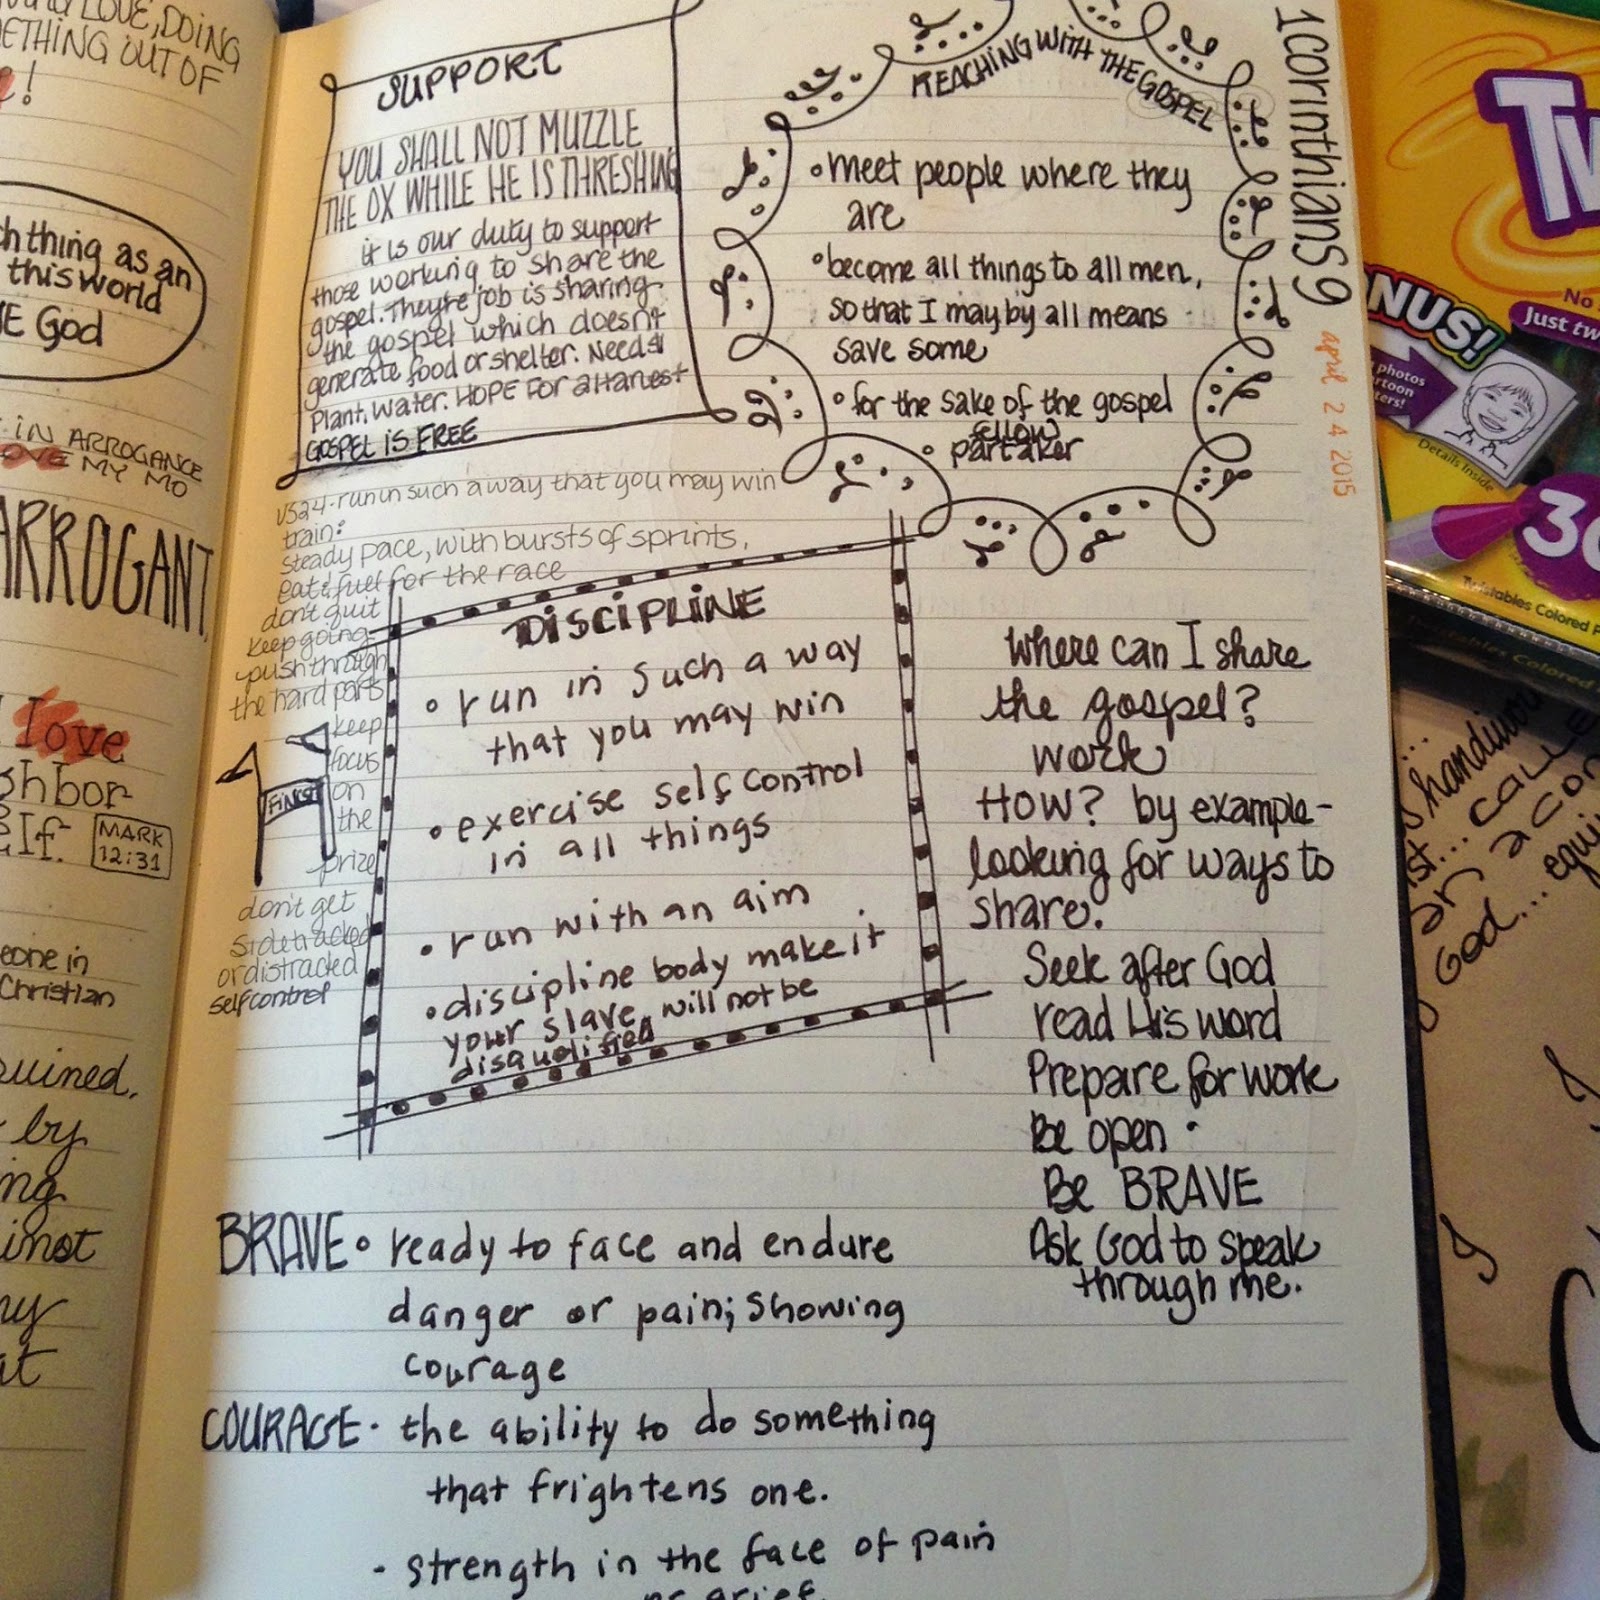 How to Start a Reading Journal (+ A Peek Inside My Journal)